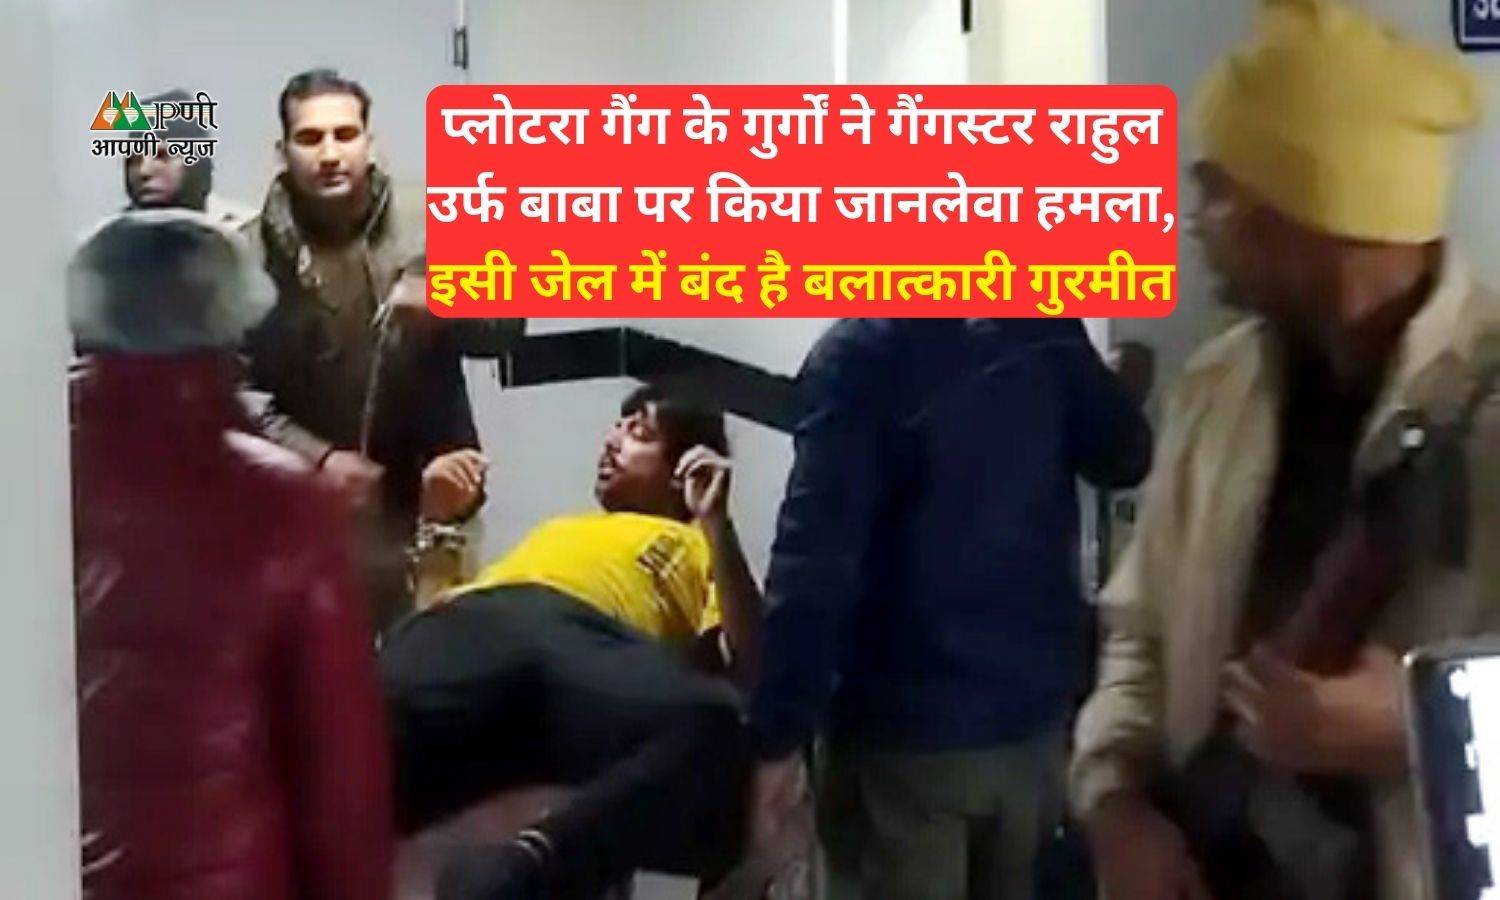 Gang war in Sunaria jail: प्लोटरा गैंग के गुर्गों ने गैंगस्टर राहुल उर्फ बाबा पर किया जानलेवा हमला, इसी जेल में बंद है बलात्कारी गुरमीत